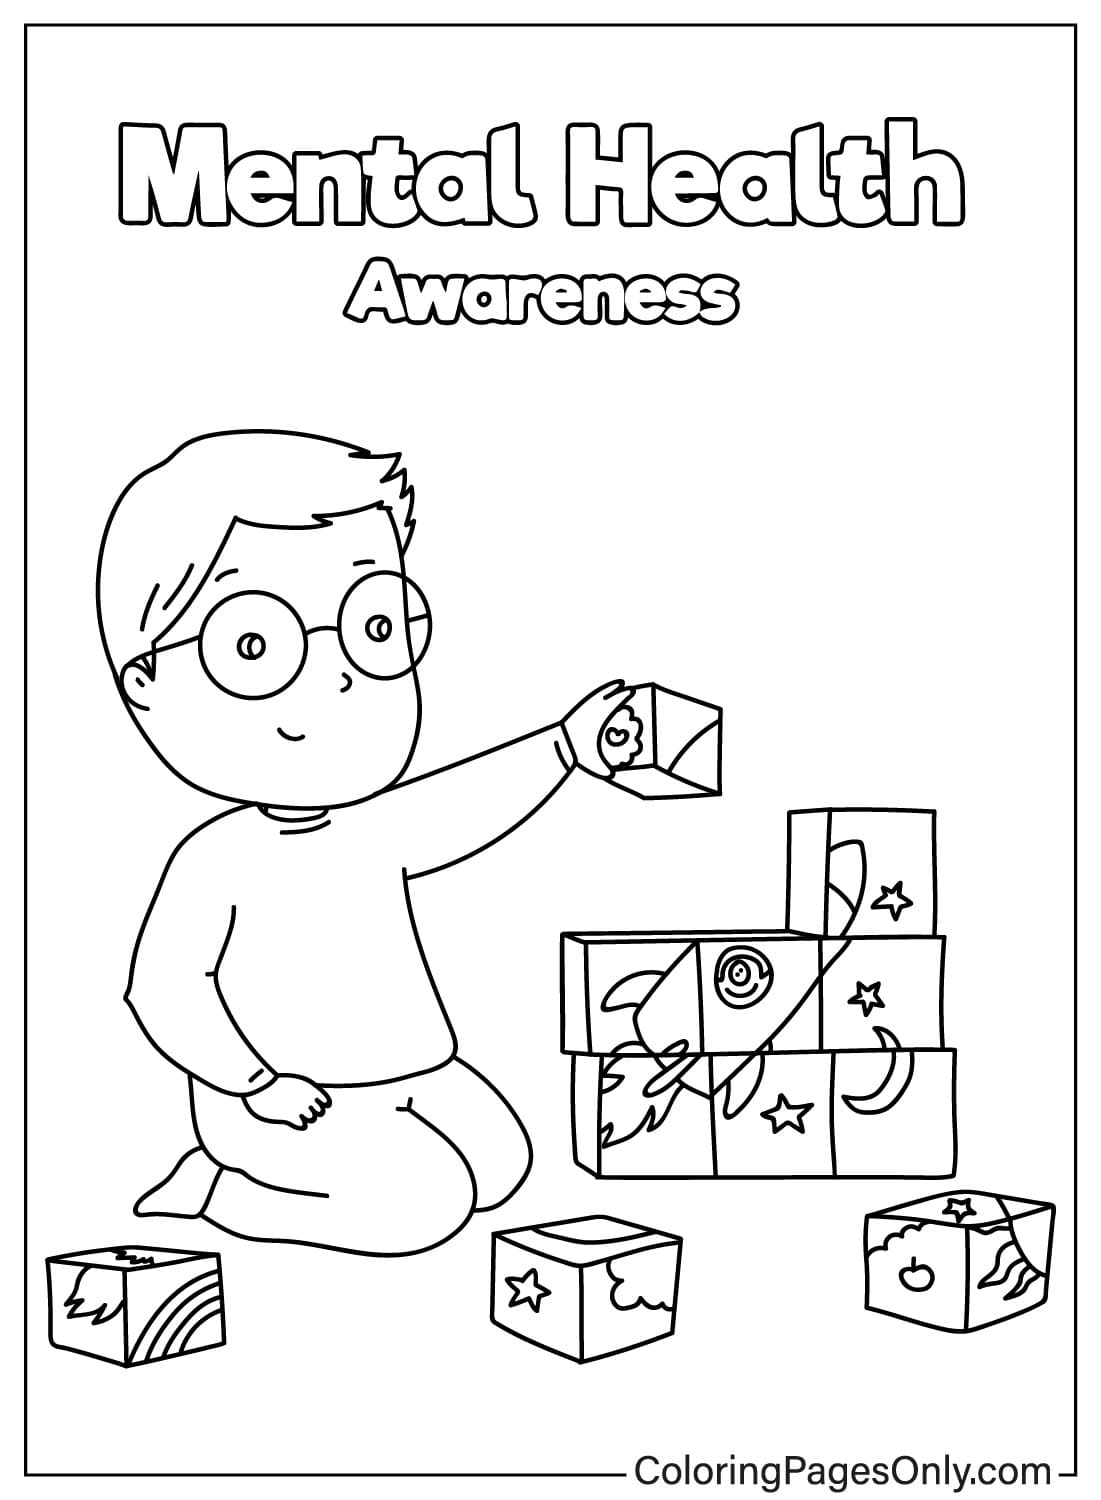 Pagina da colorare per bambini del mese della sensibilizzazione sull'autismo dalla Giornata mondiale della sensibilizzazione sull'autismo